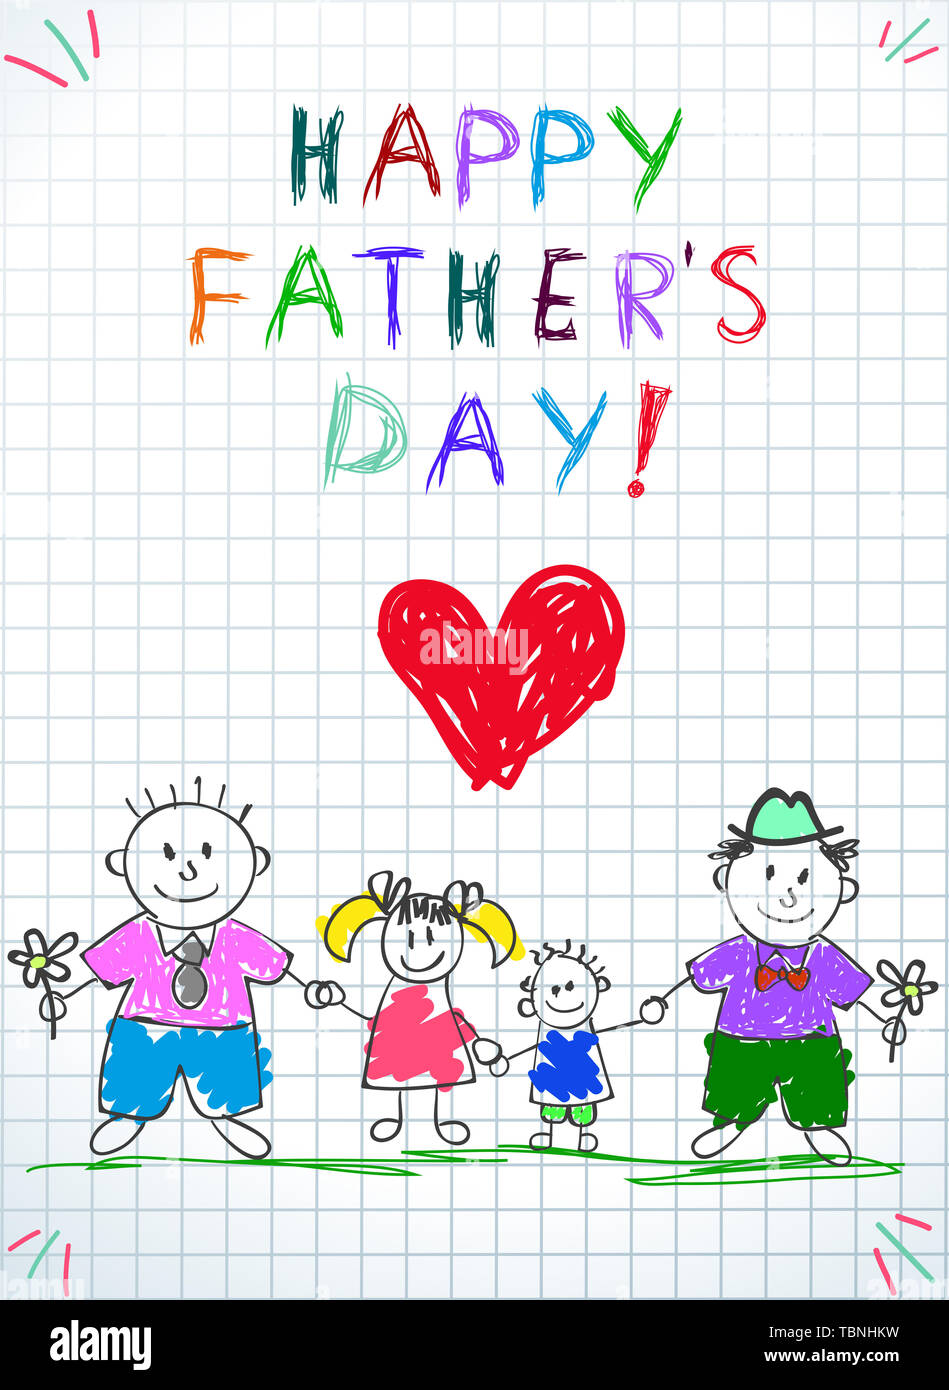 Lgbt-Familie. Happy Vatertag Kinder Zeichnung. Zwei Männer mit Annahme durch die Mädchen und Jungen auf grünem Gras auf kariertem Papier Hintergrund stehen. Baby Gratulation, Stockfoto